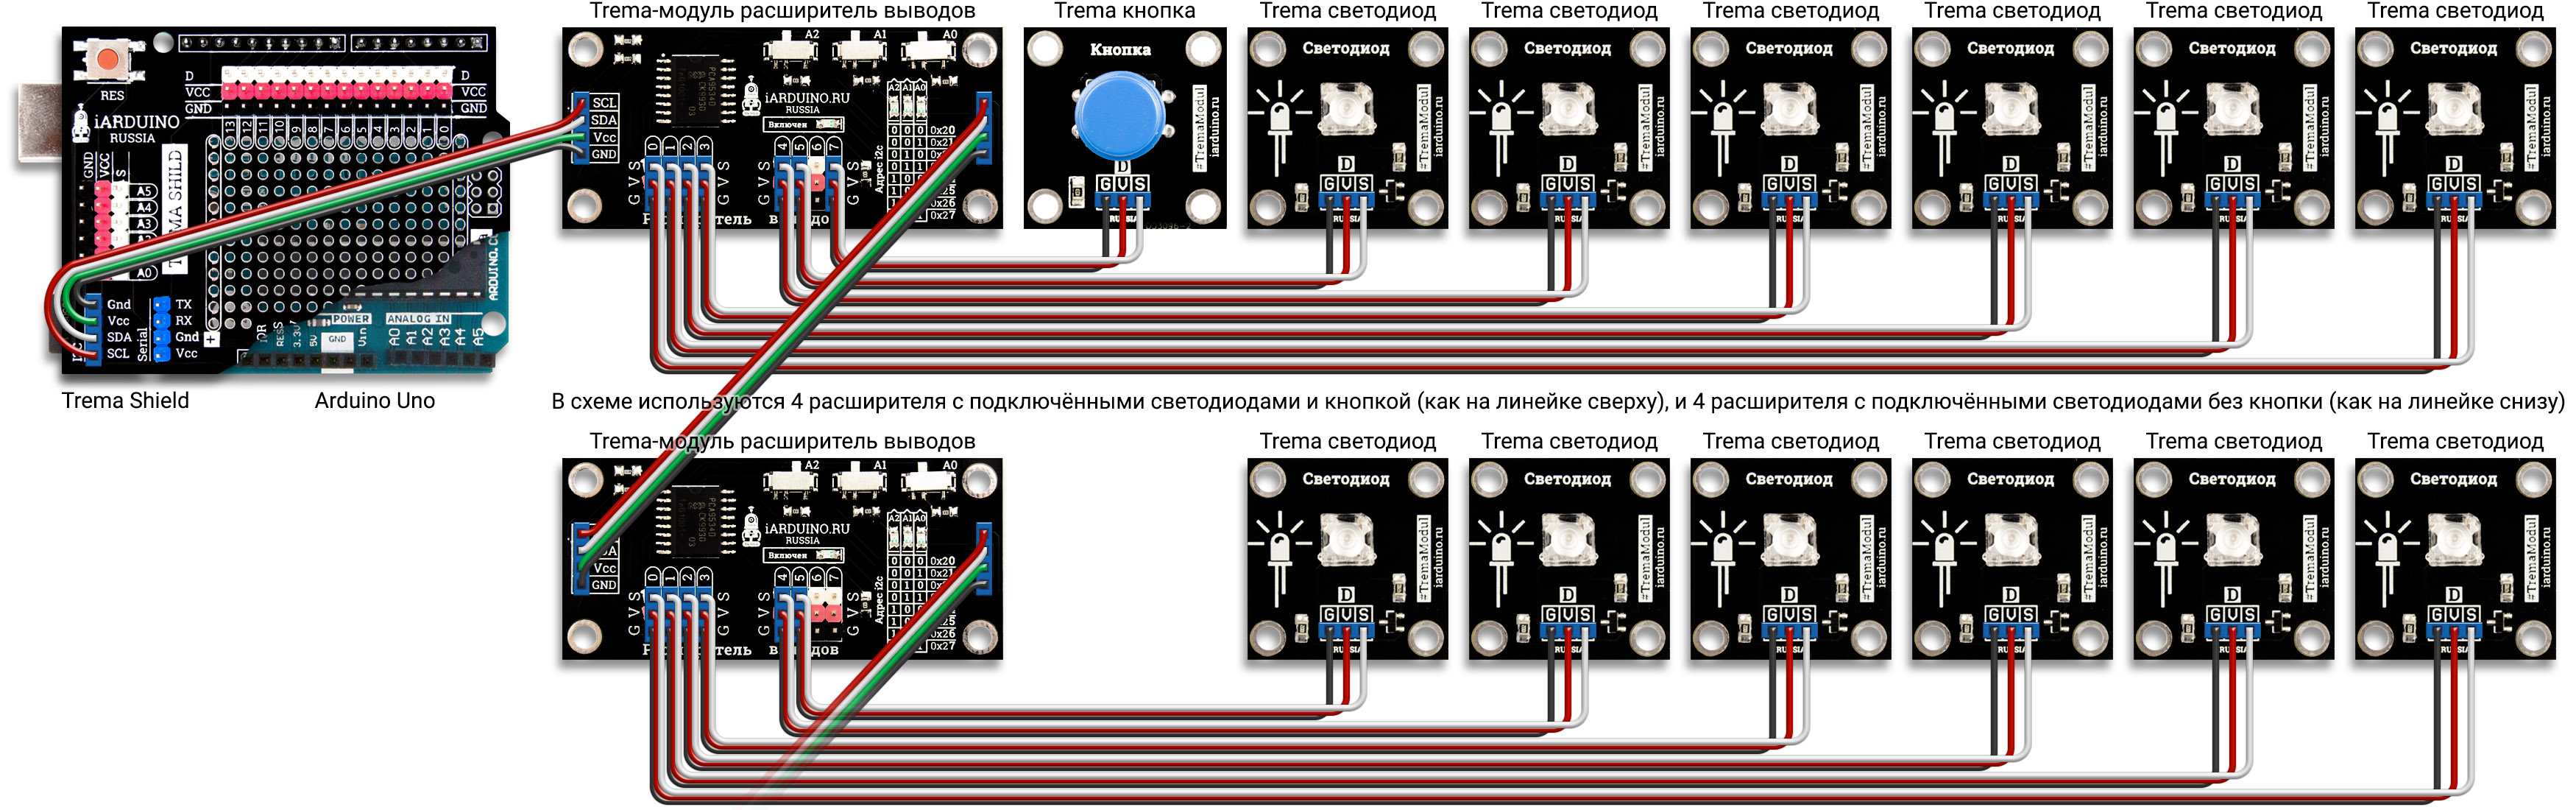 Схема подключения цифрового расширителя выводов к Arduino